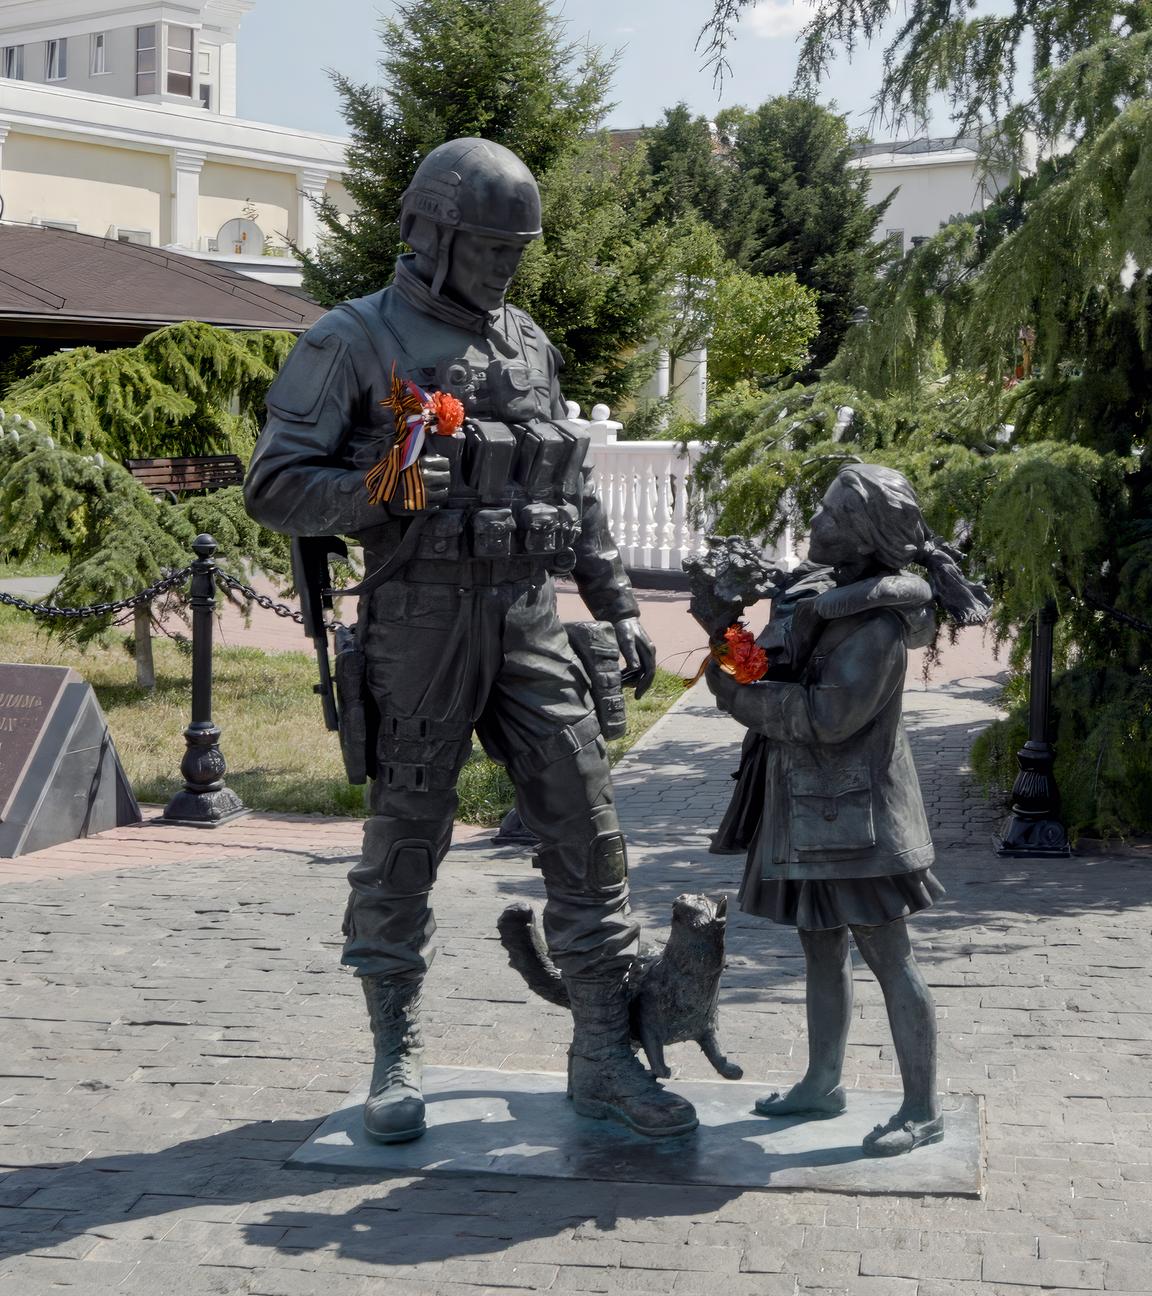 Ein Mädchen reicht einem Soldaten eine Blume. Beide Personen im Denkmal werden als Statuen dargestellt.